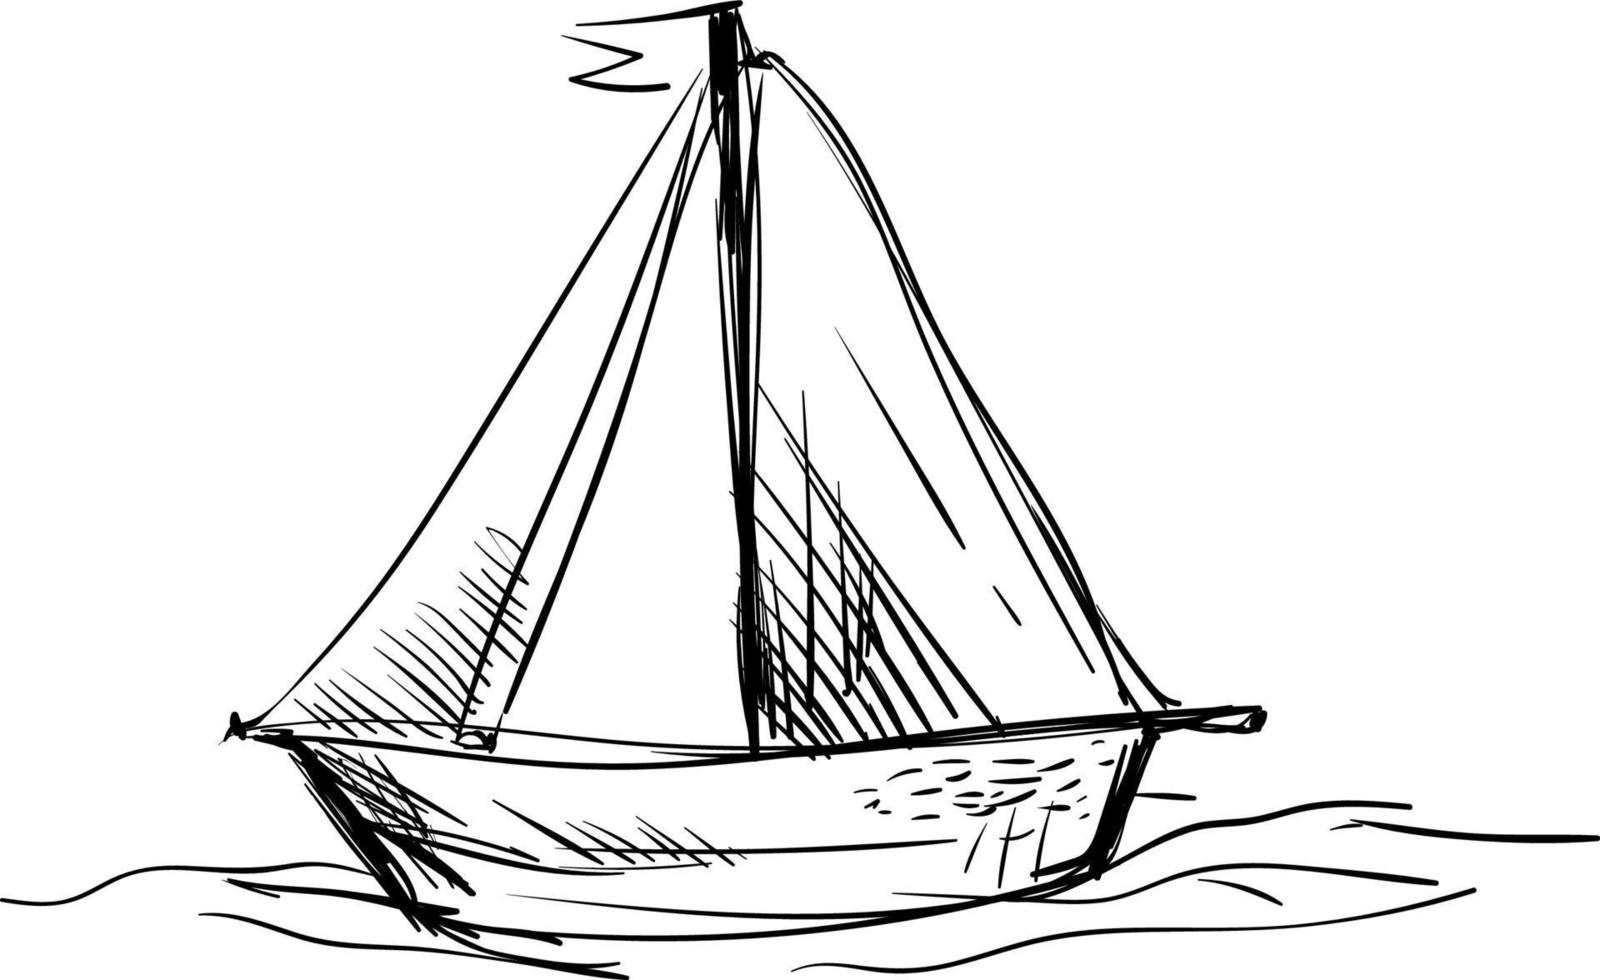 segla båt skiss, illustration, vektor på vit bakgrund.